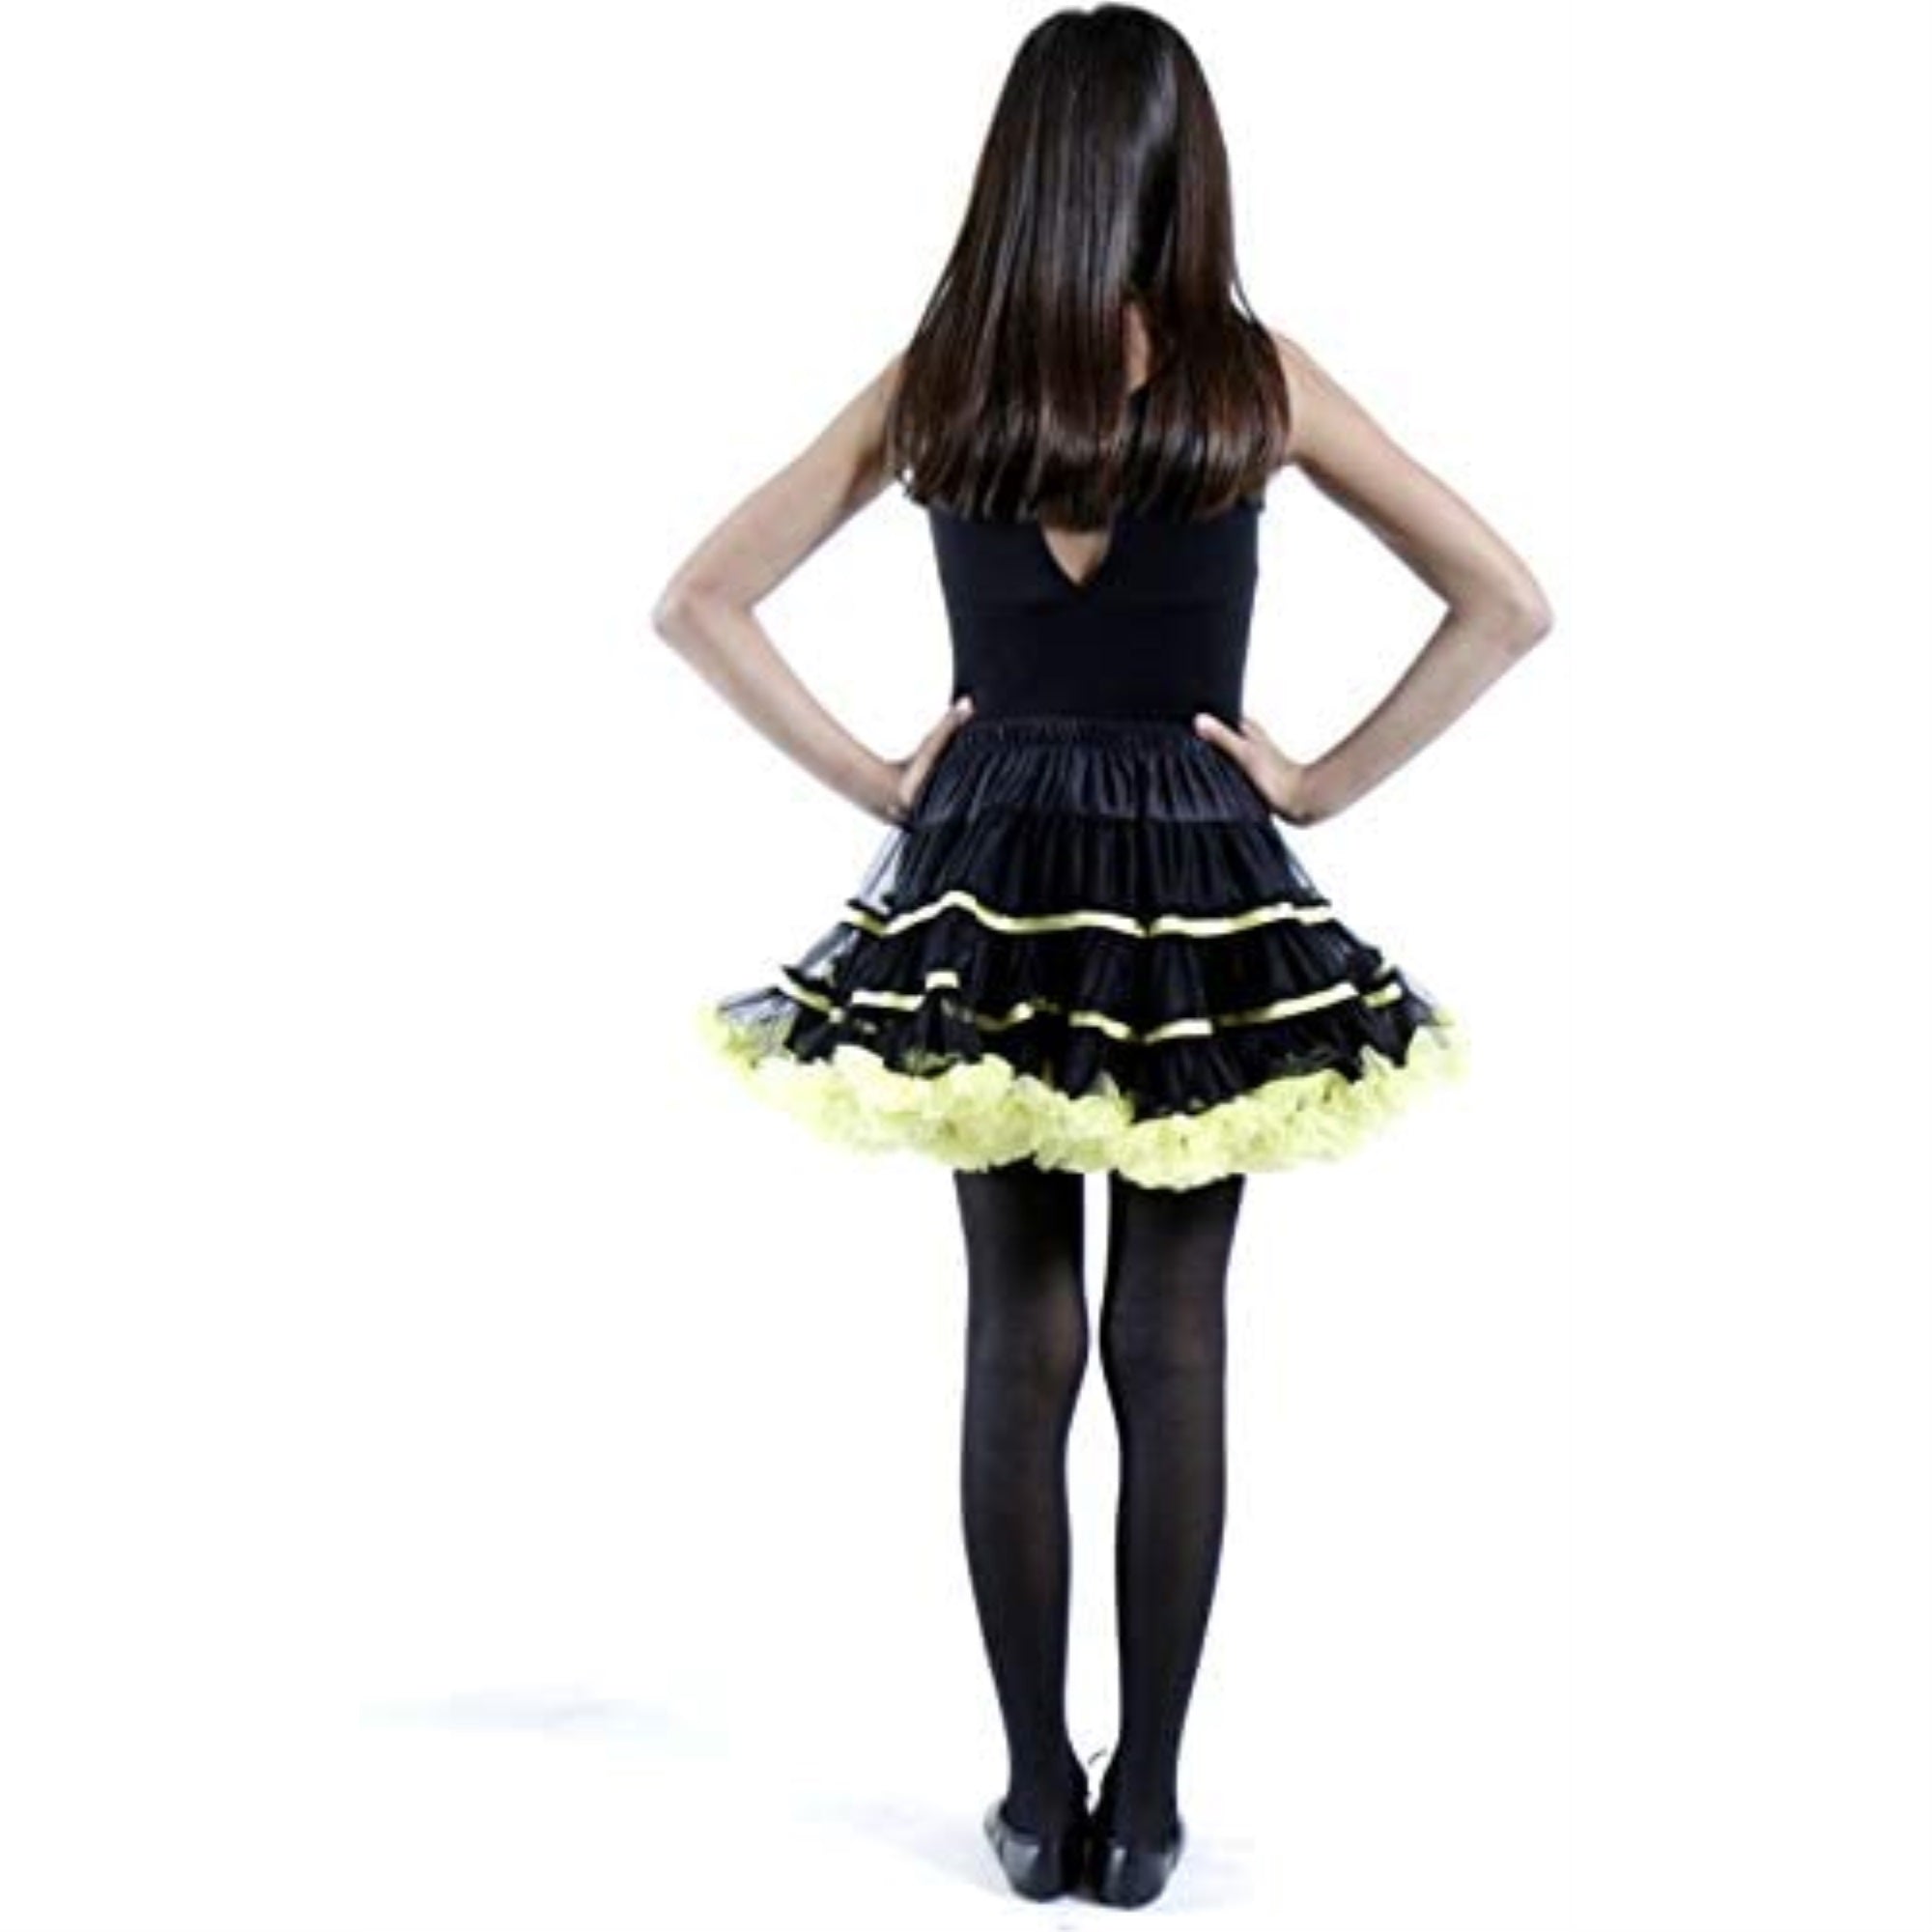 Tutus Adult Tulle Costume Petticoat - Black/Yellow malcomodes-biz.myshopify.com